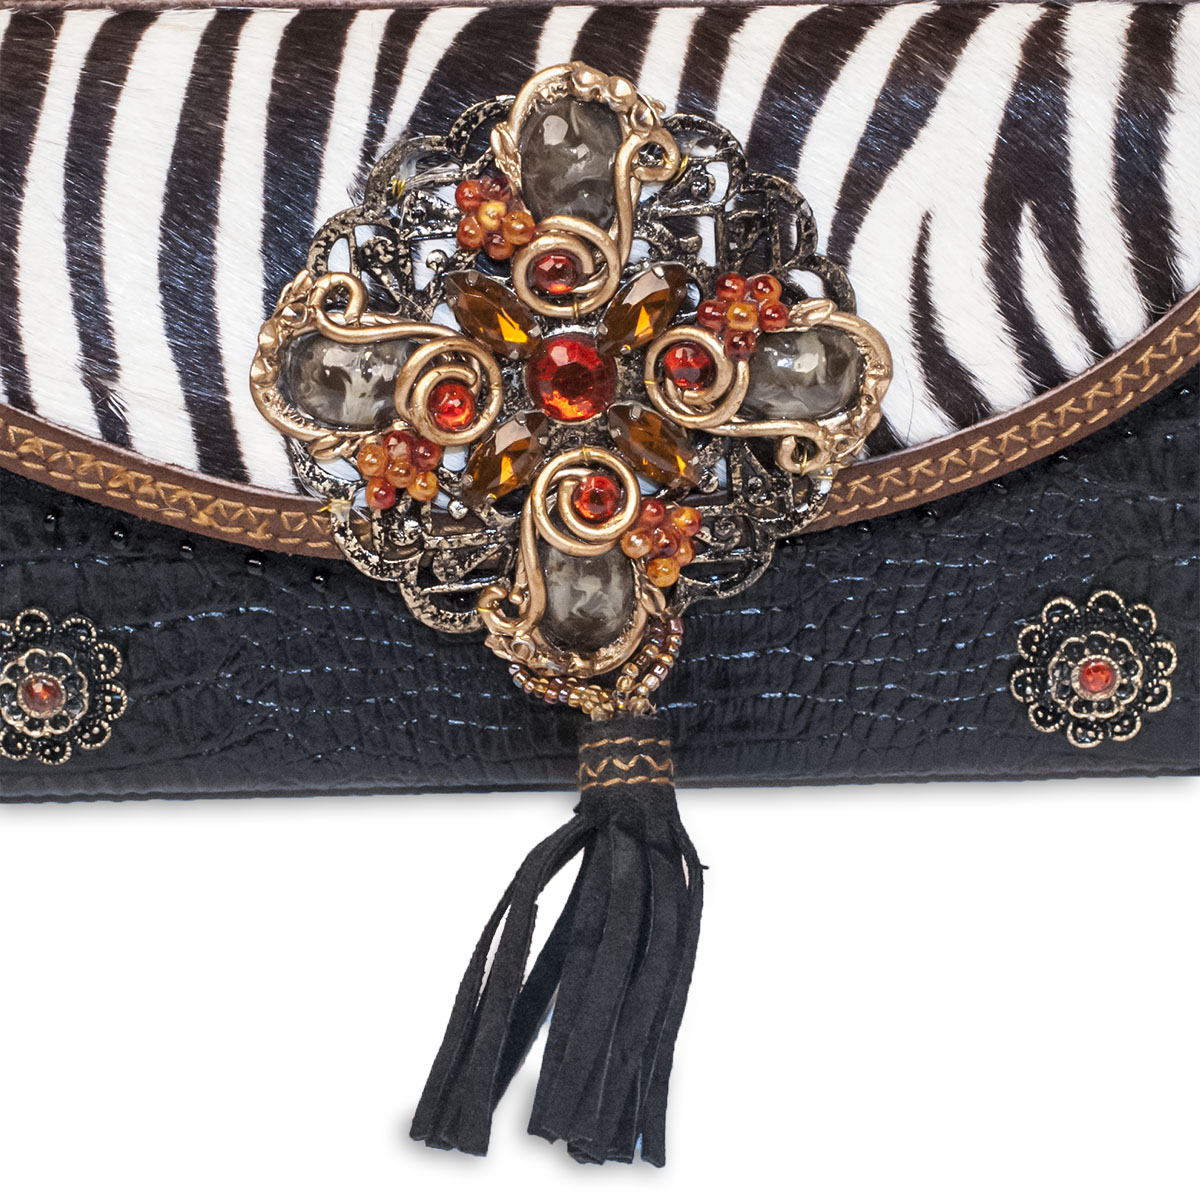 jeweled handbag